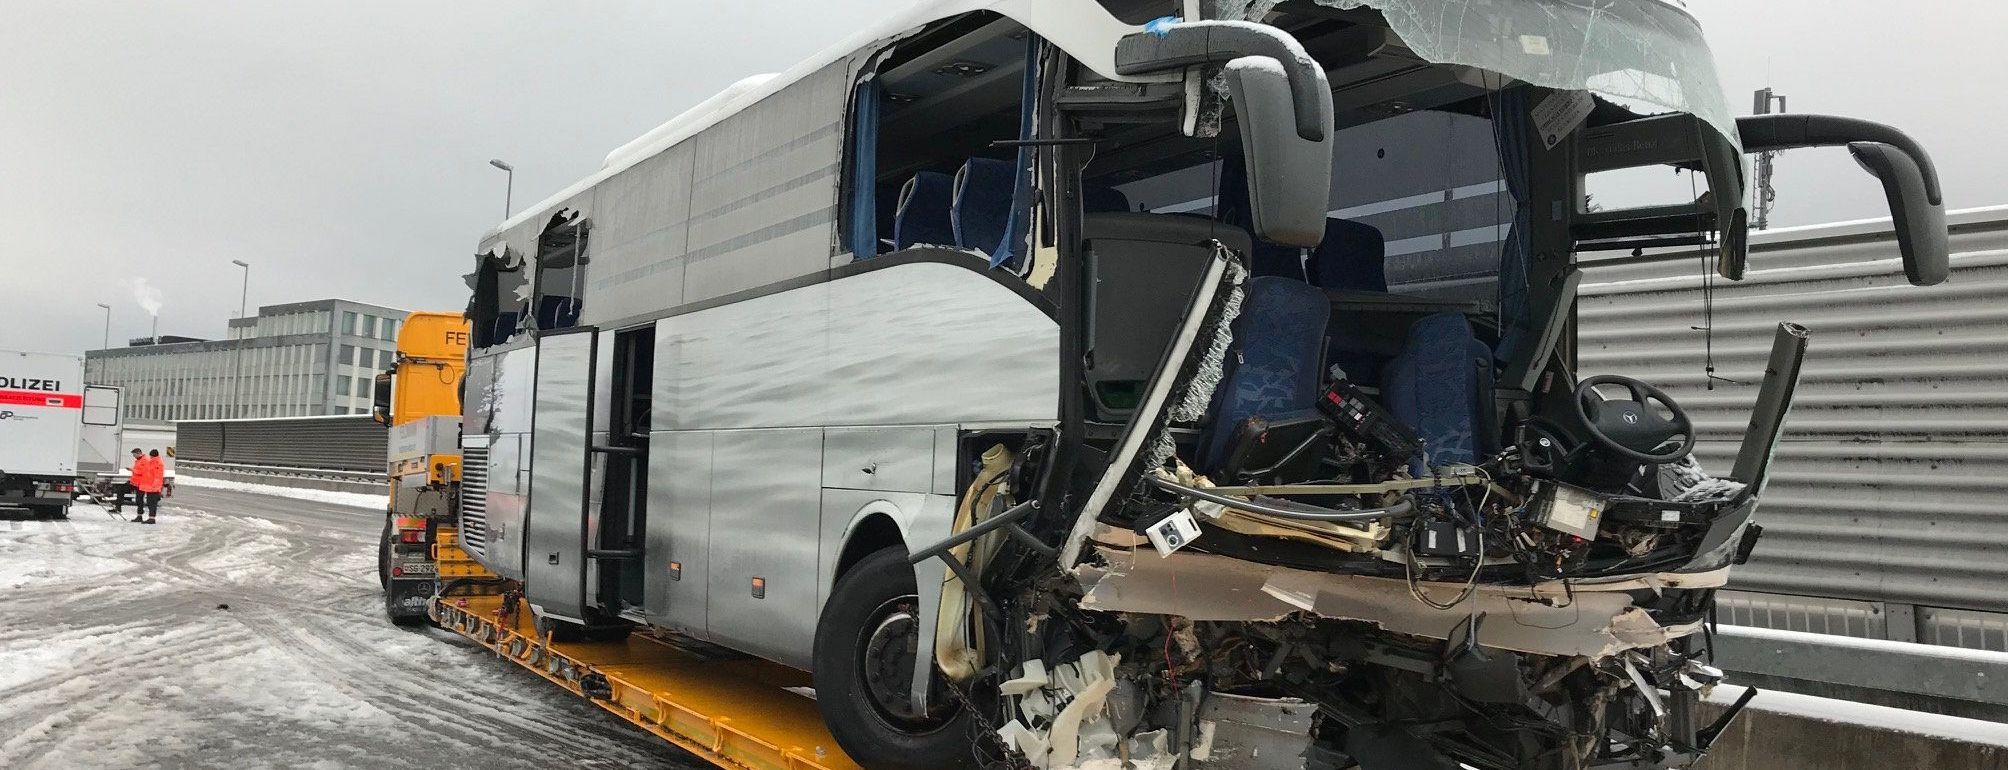 Жахлива аварія автобуса у Швейцарії: є загиблий та десятки поранених